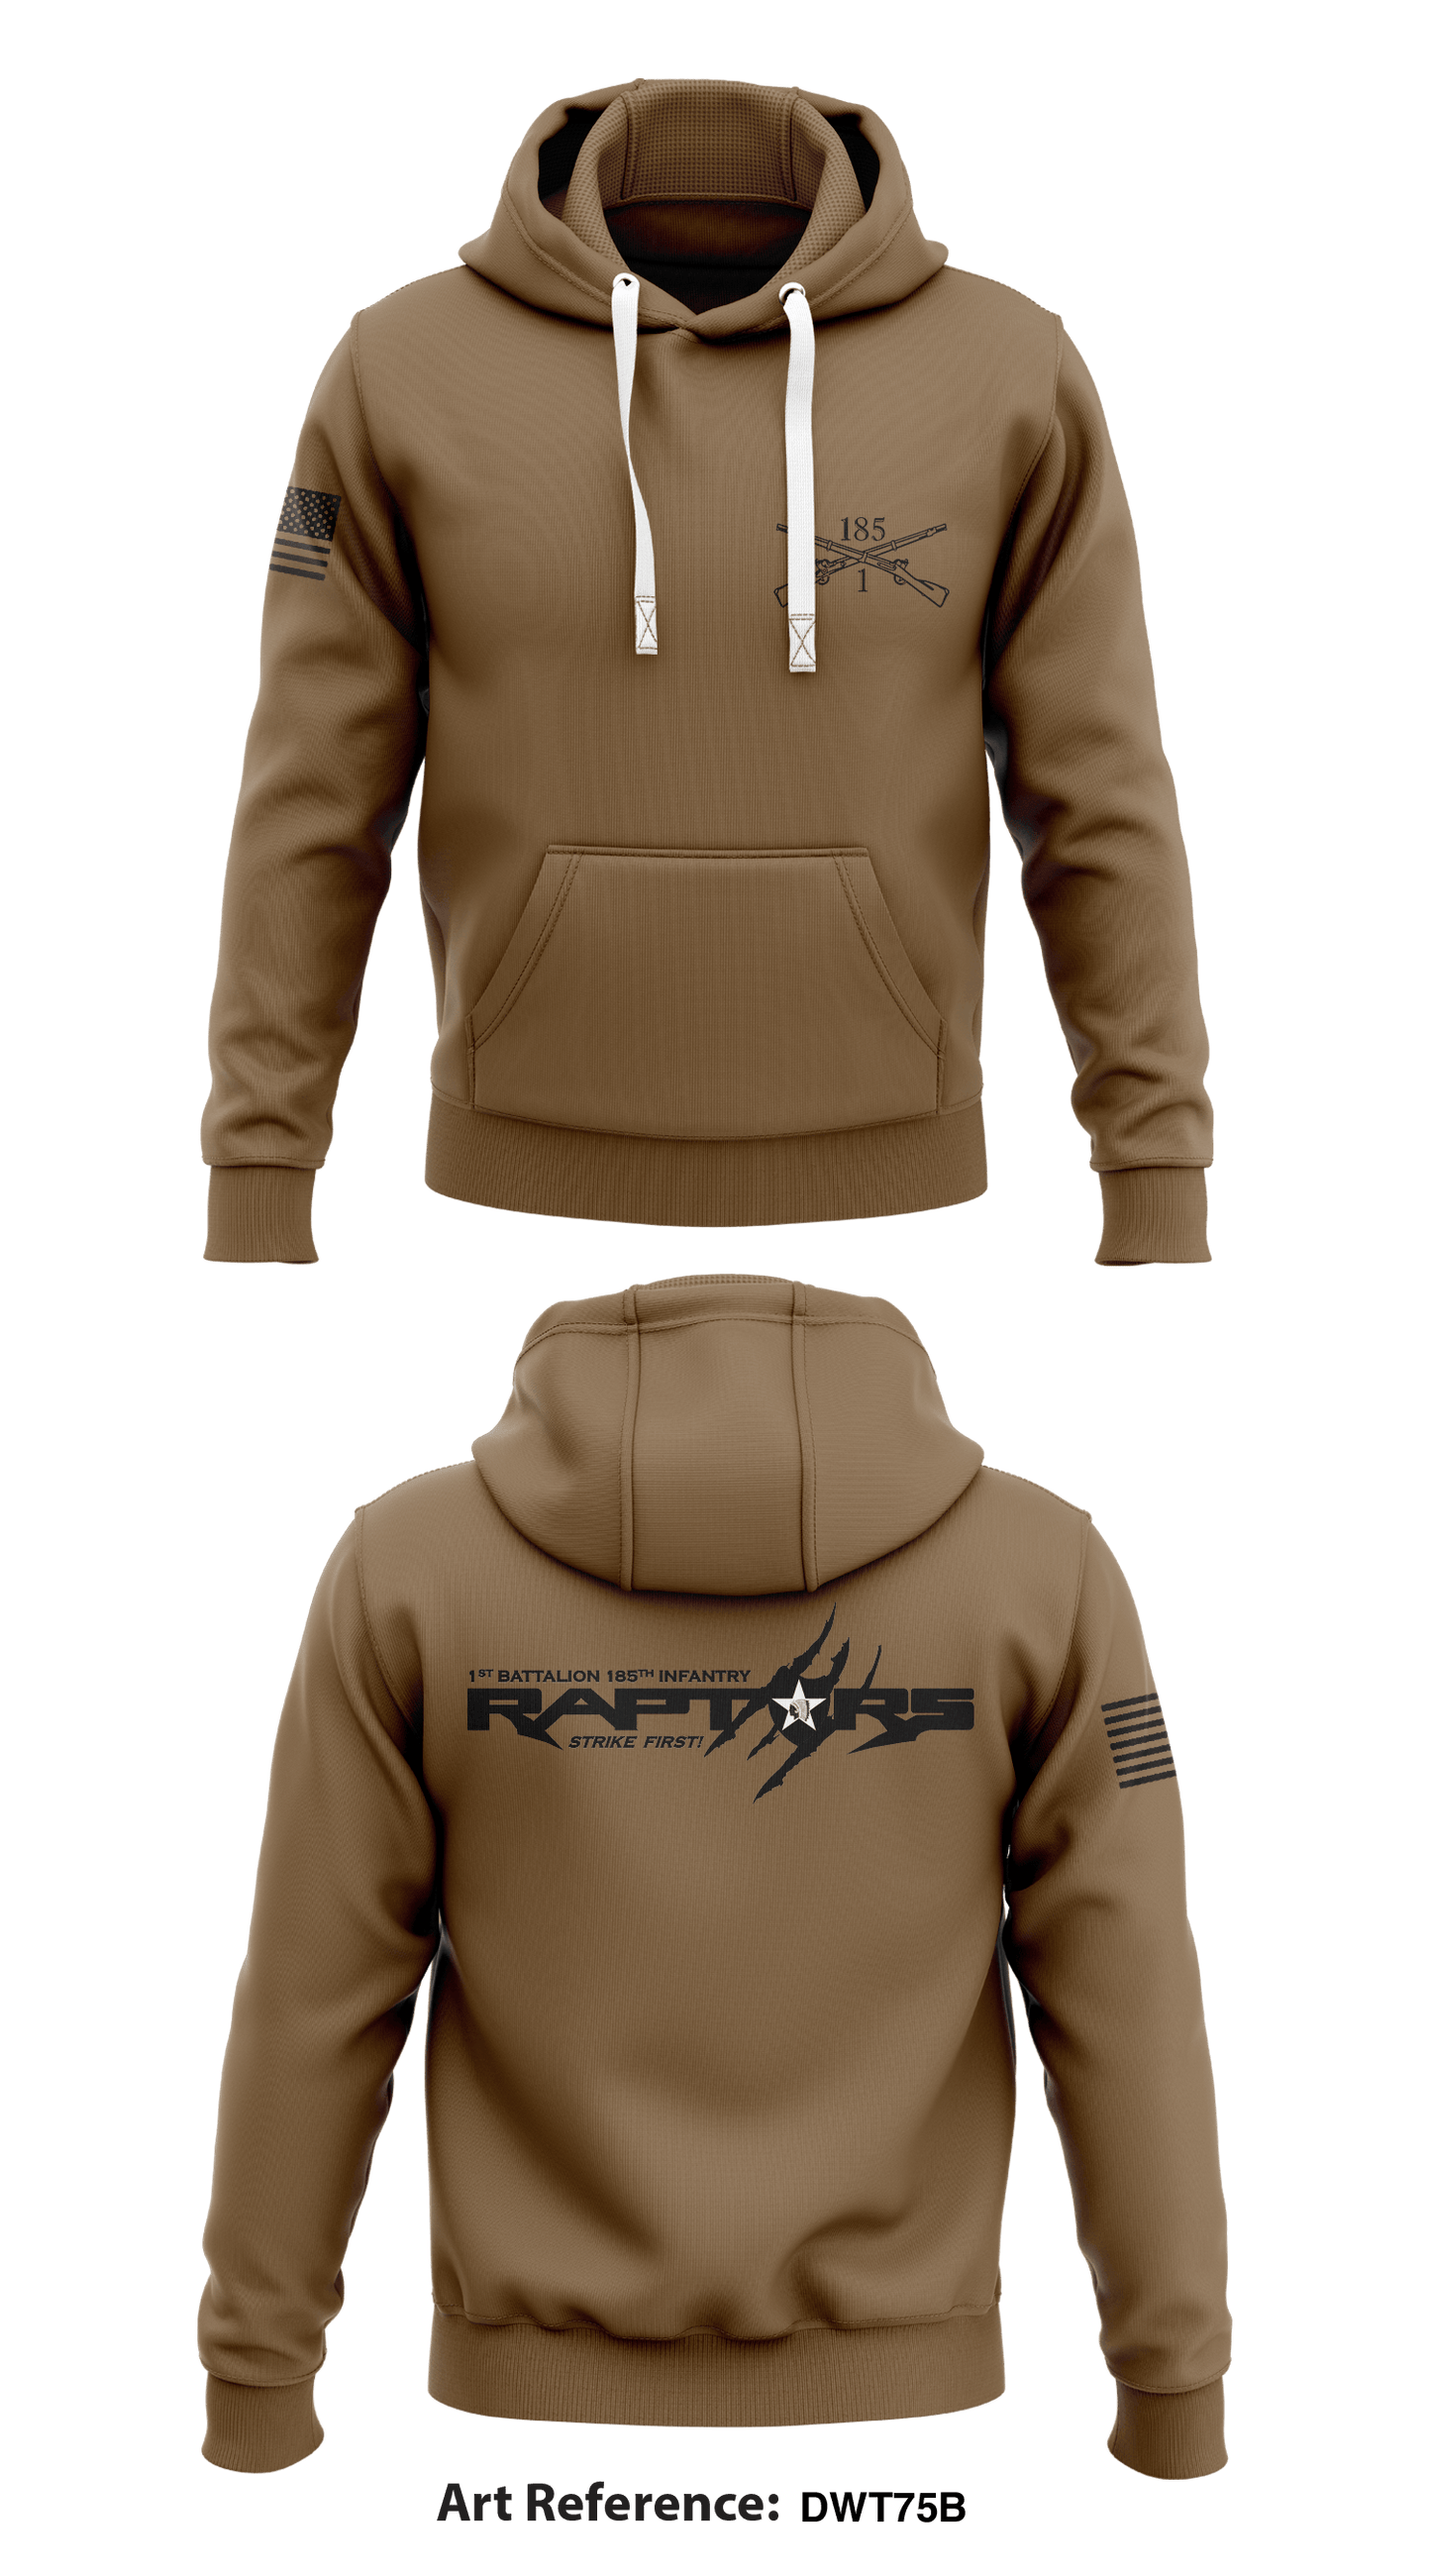 1-185 Stryker Infantry Store 1  Core Men's Hooded Performance Sweatshirt - DwT75B